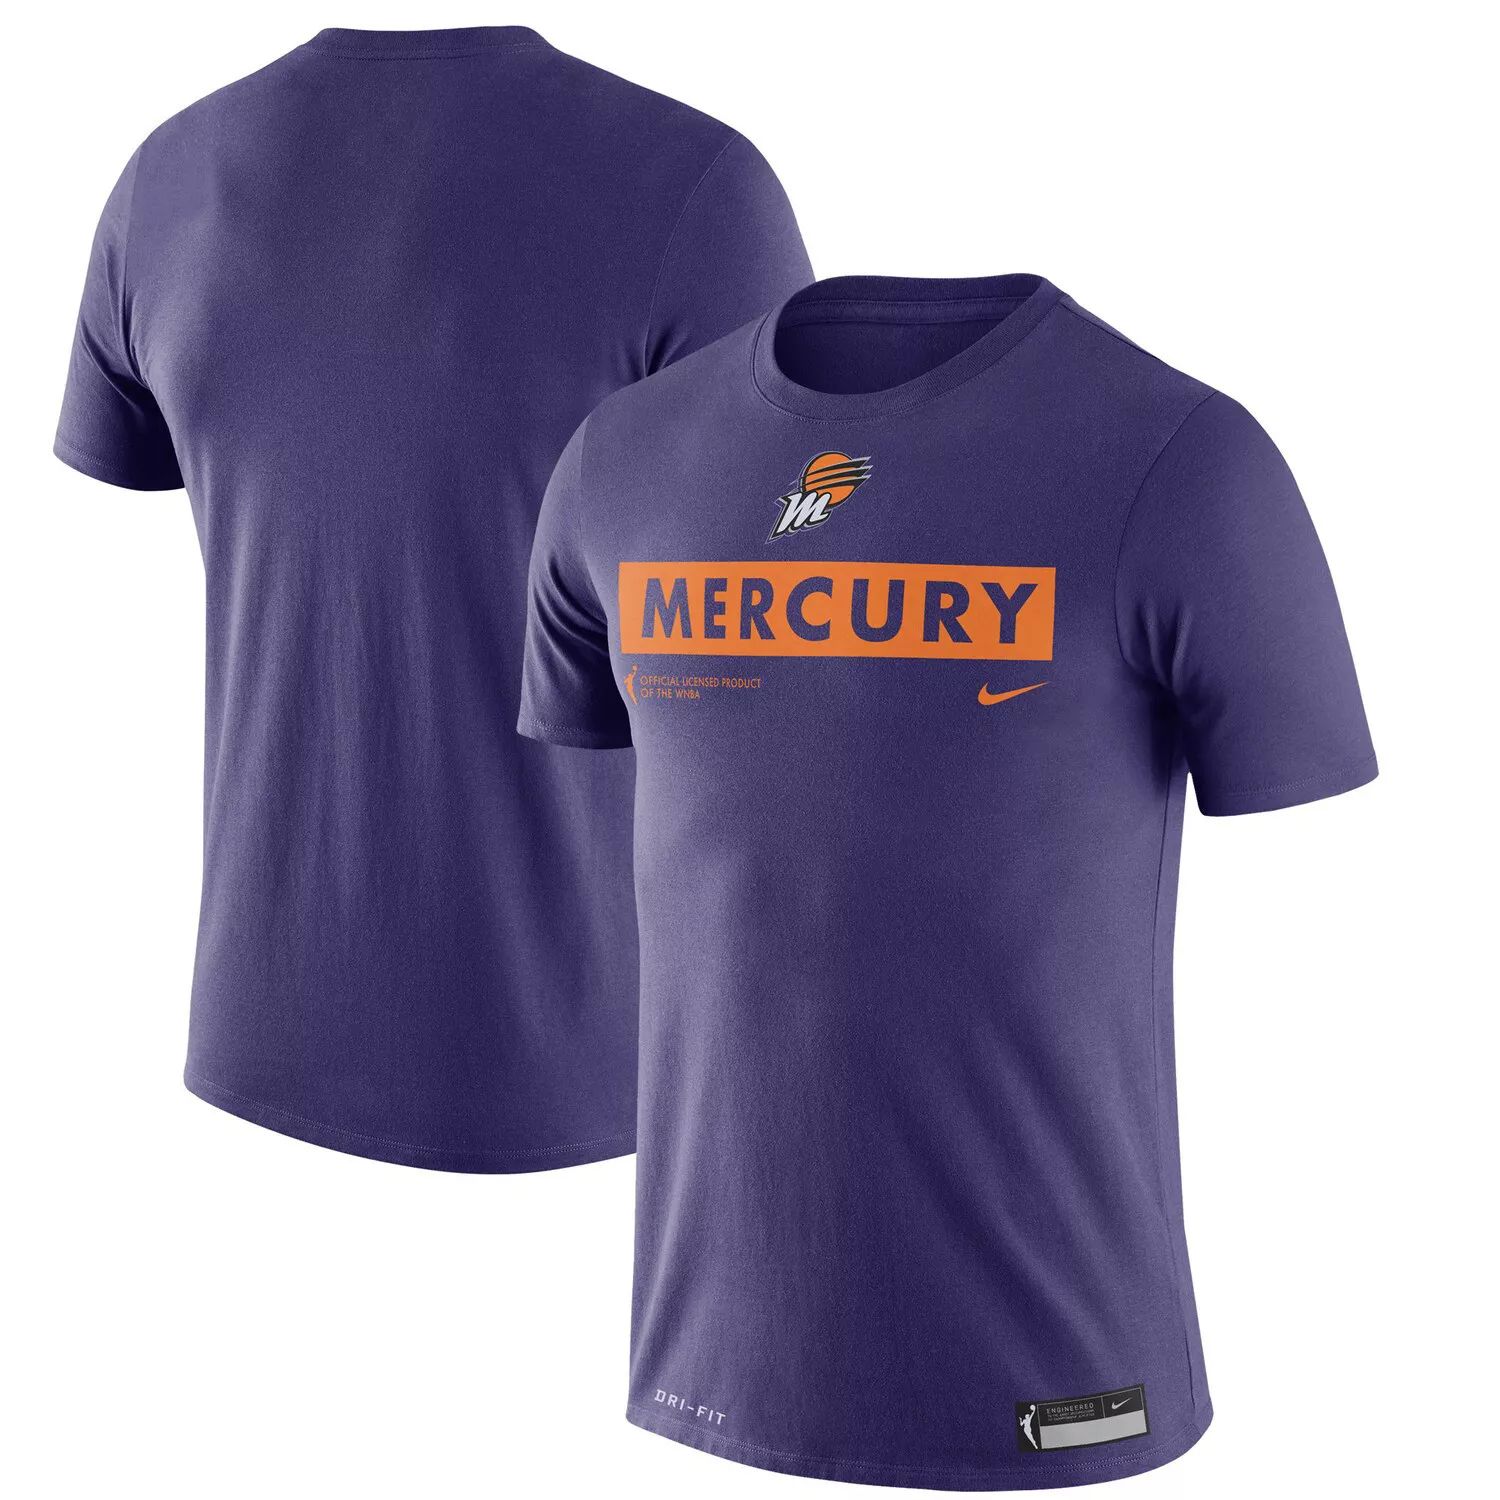 Фиолетовая тренировочная футболка Nike Phoenix Mercury Mercury